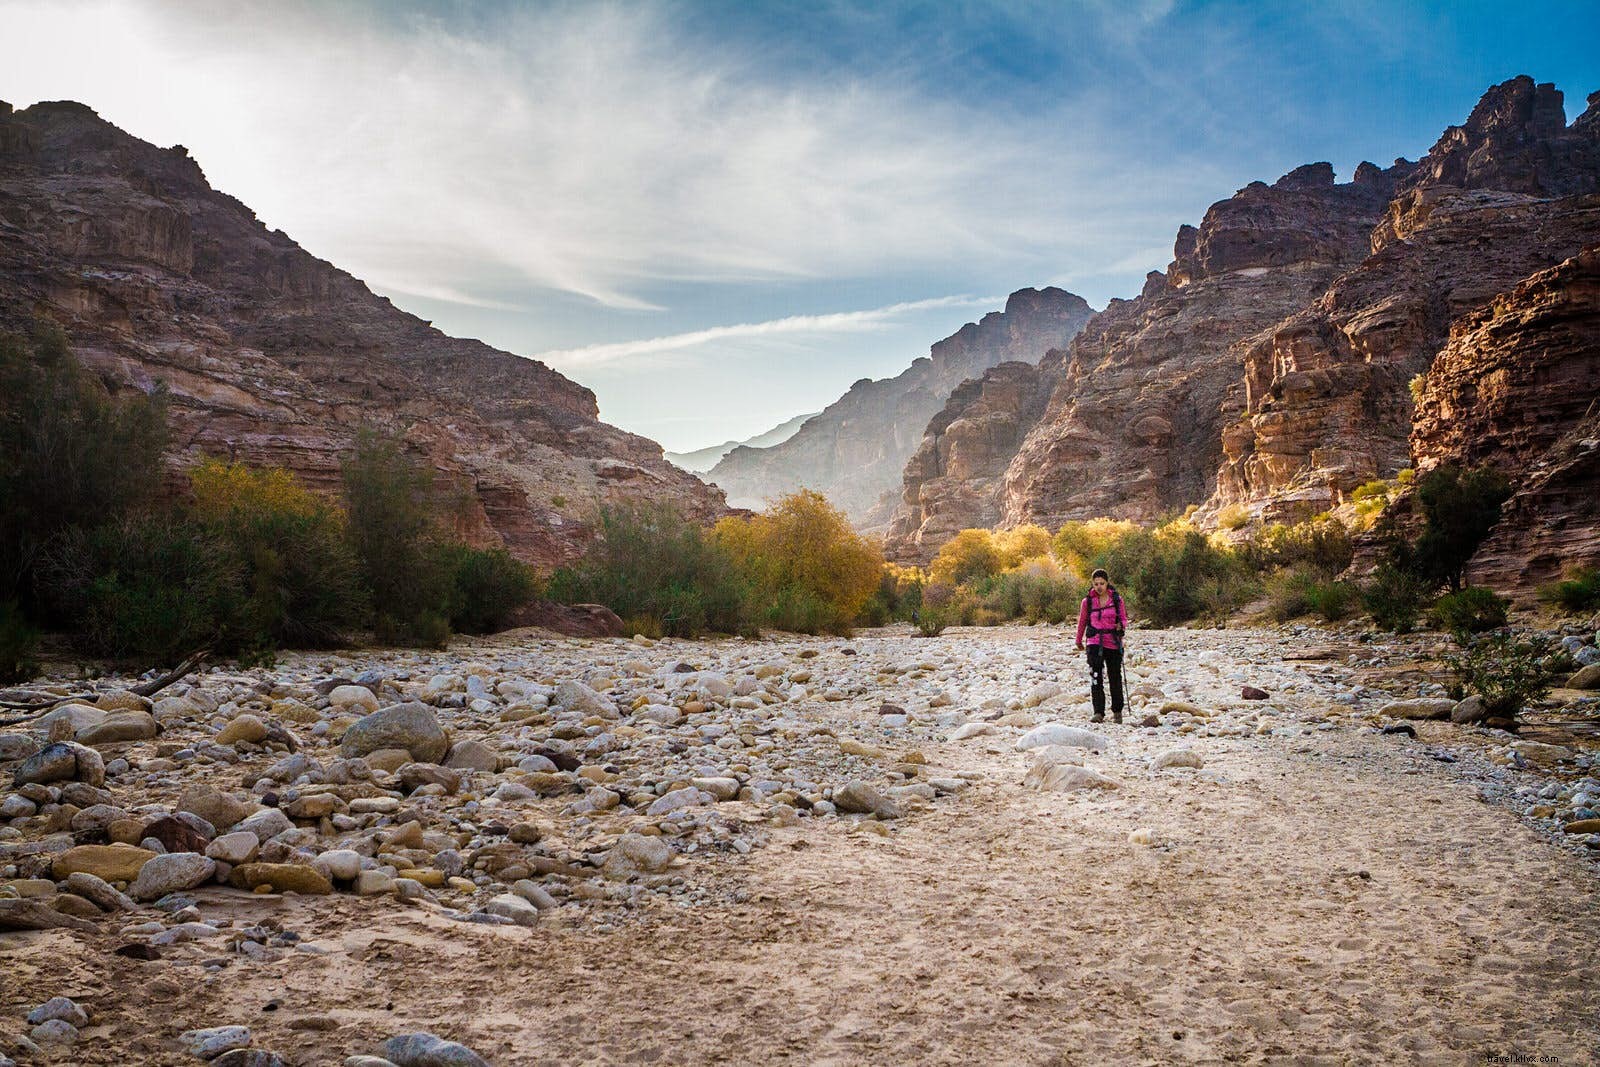 Randonnée sur le Jordan Trail, le nouveau cross-country du Moyen-Orient 